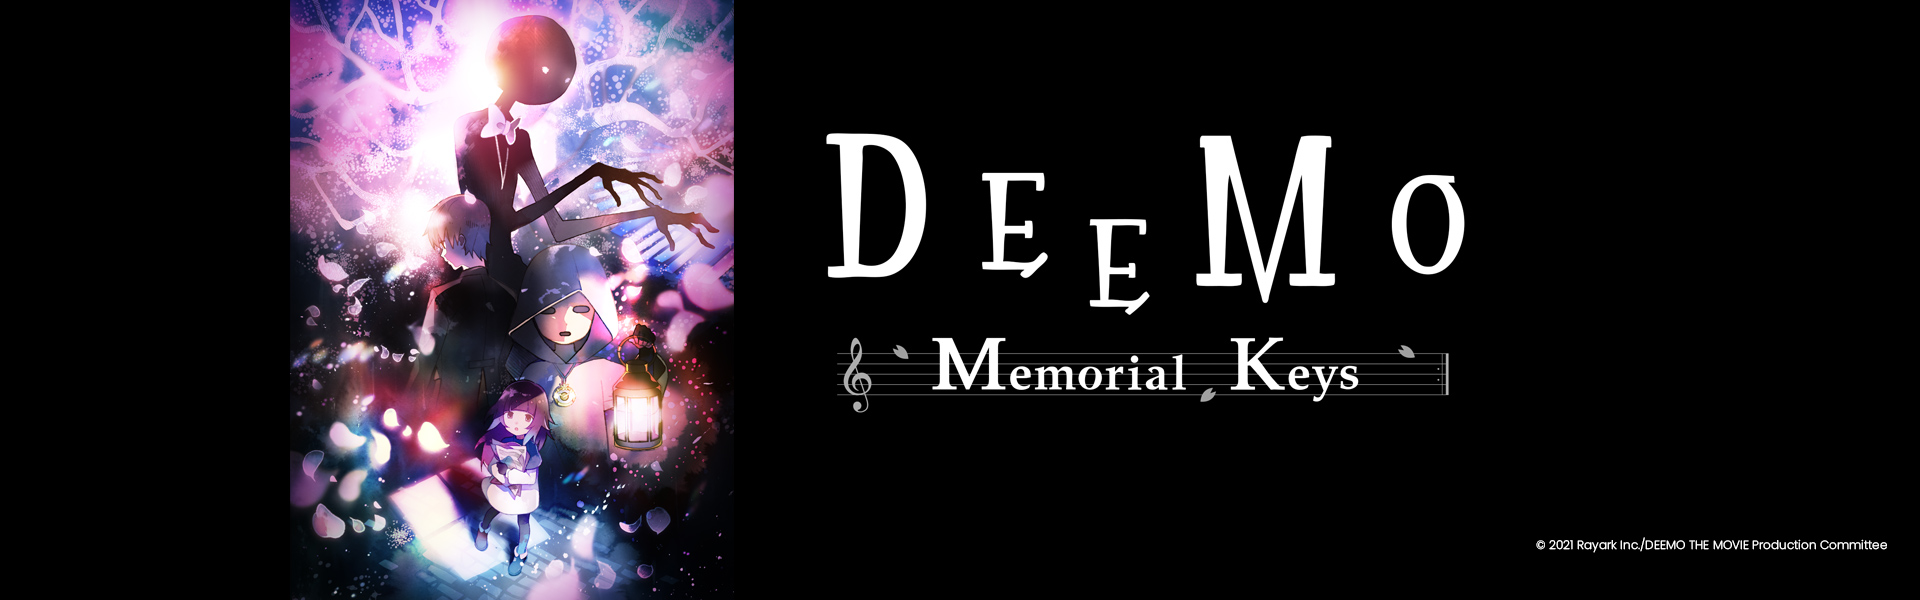 DEEMO  Memorial Keys